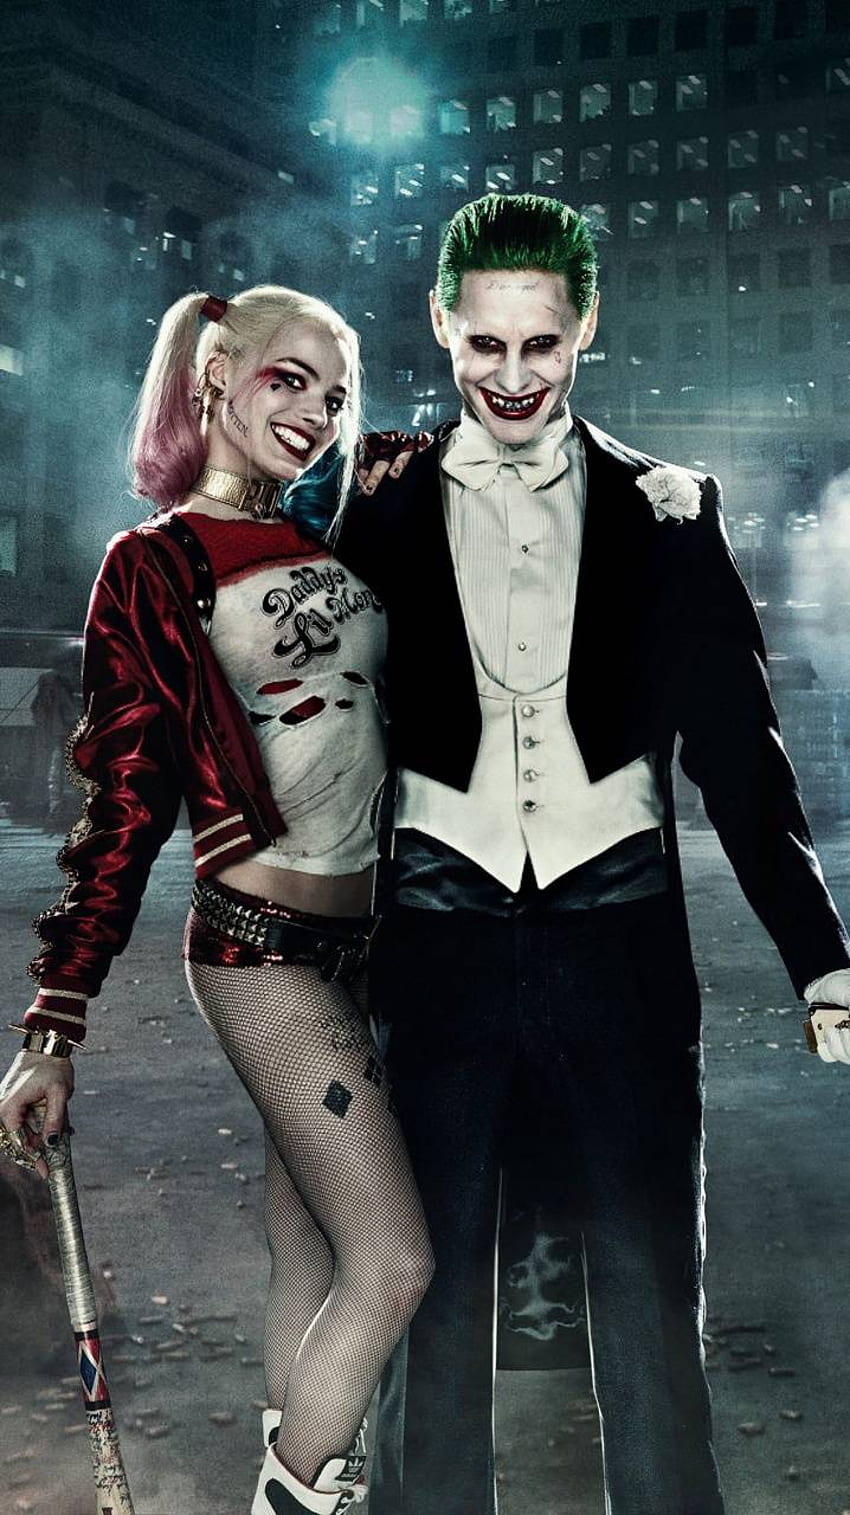 The Joker  Harley Quinn 4K Wallpaper on Behance